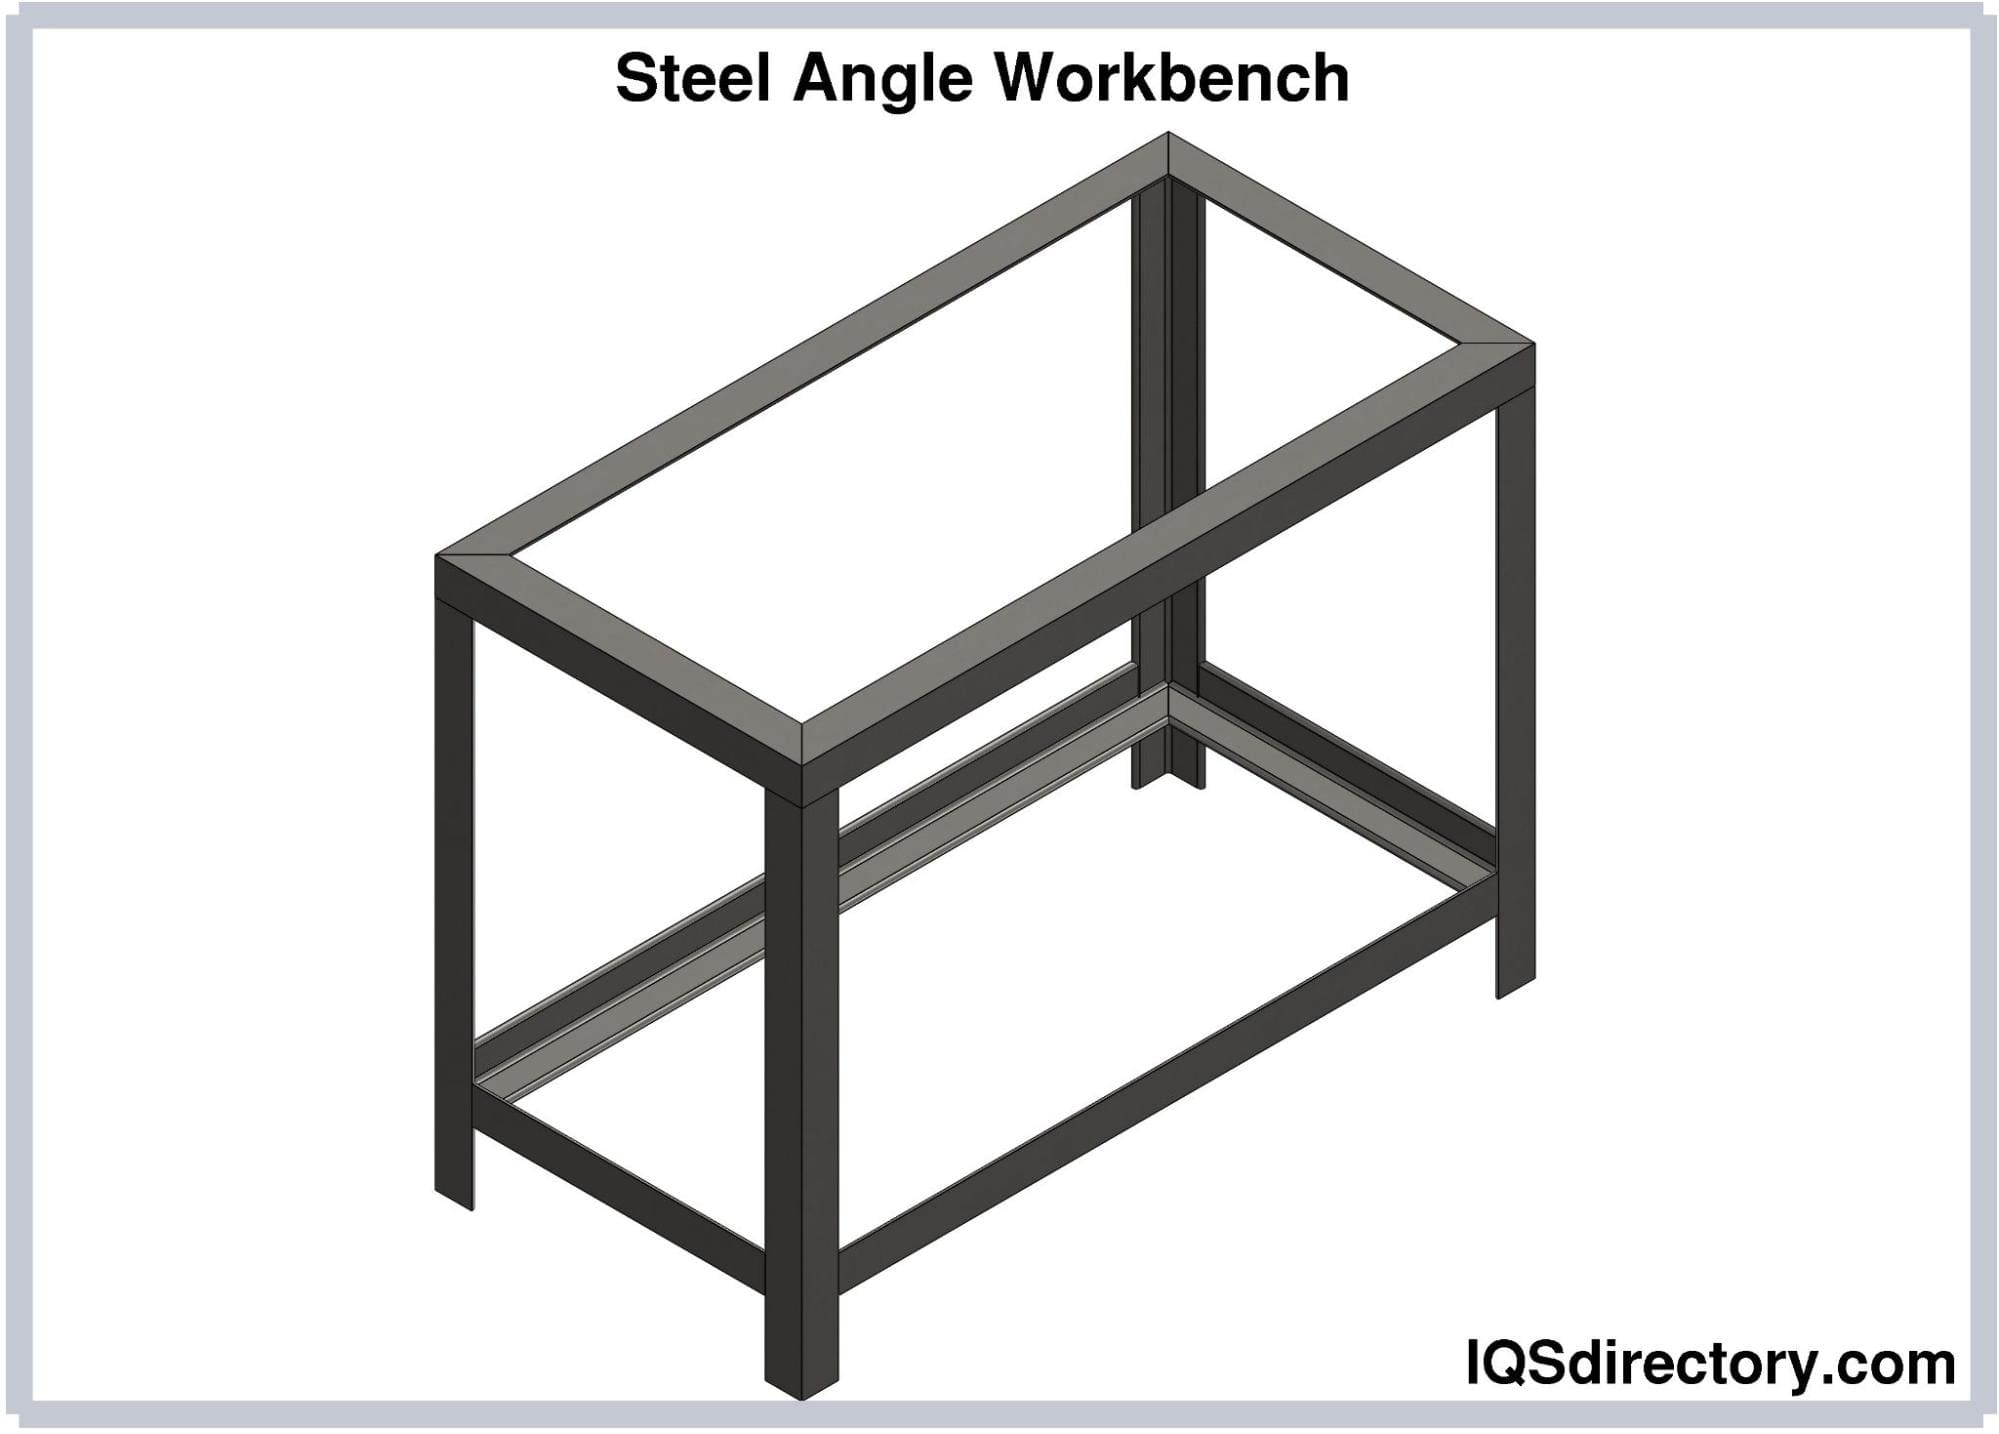 Steel Angle Workbench